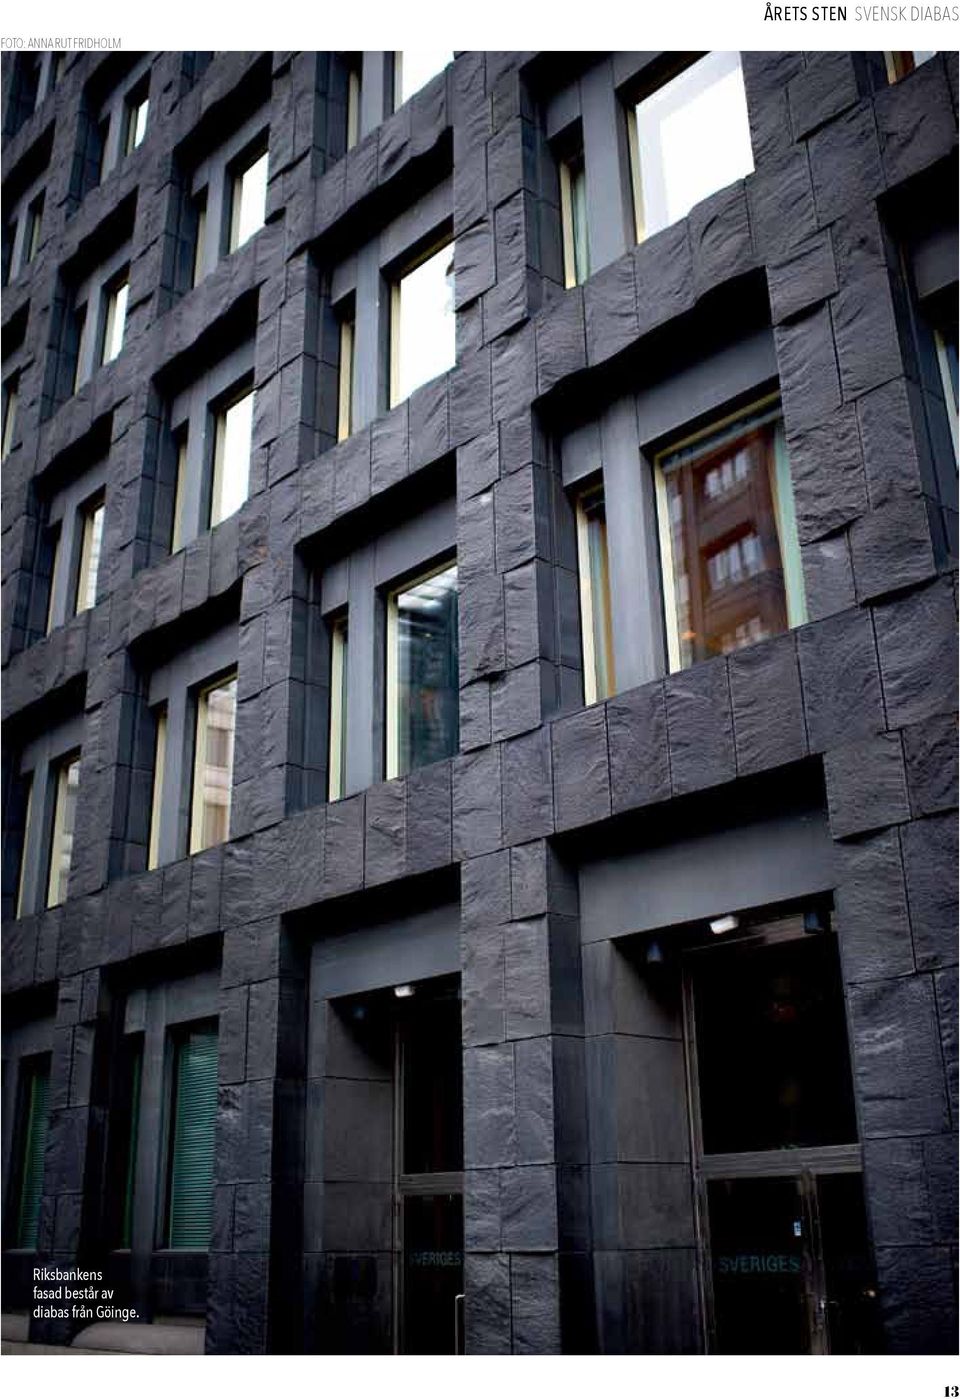 Riksbankens fasad består